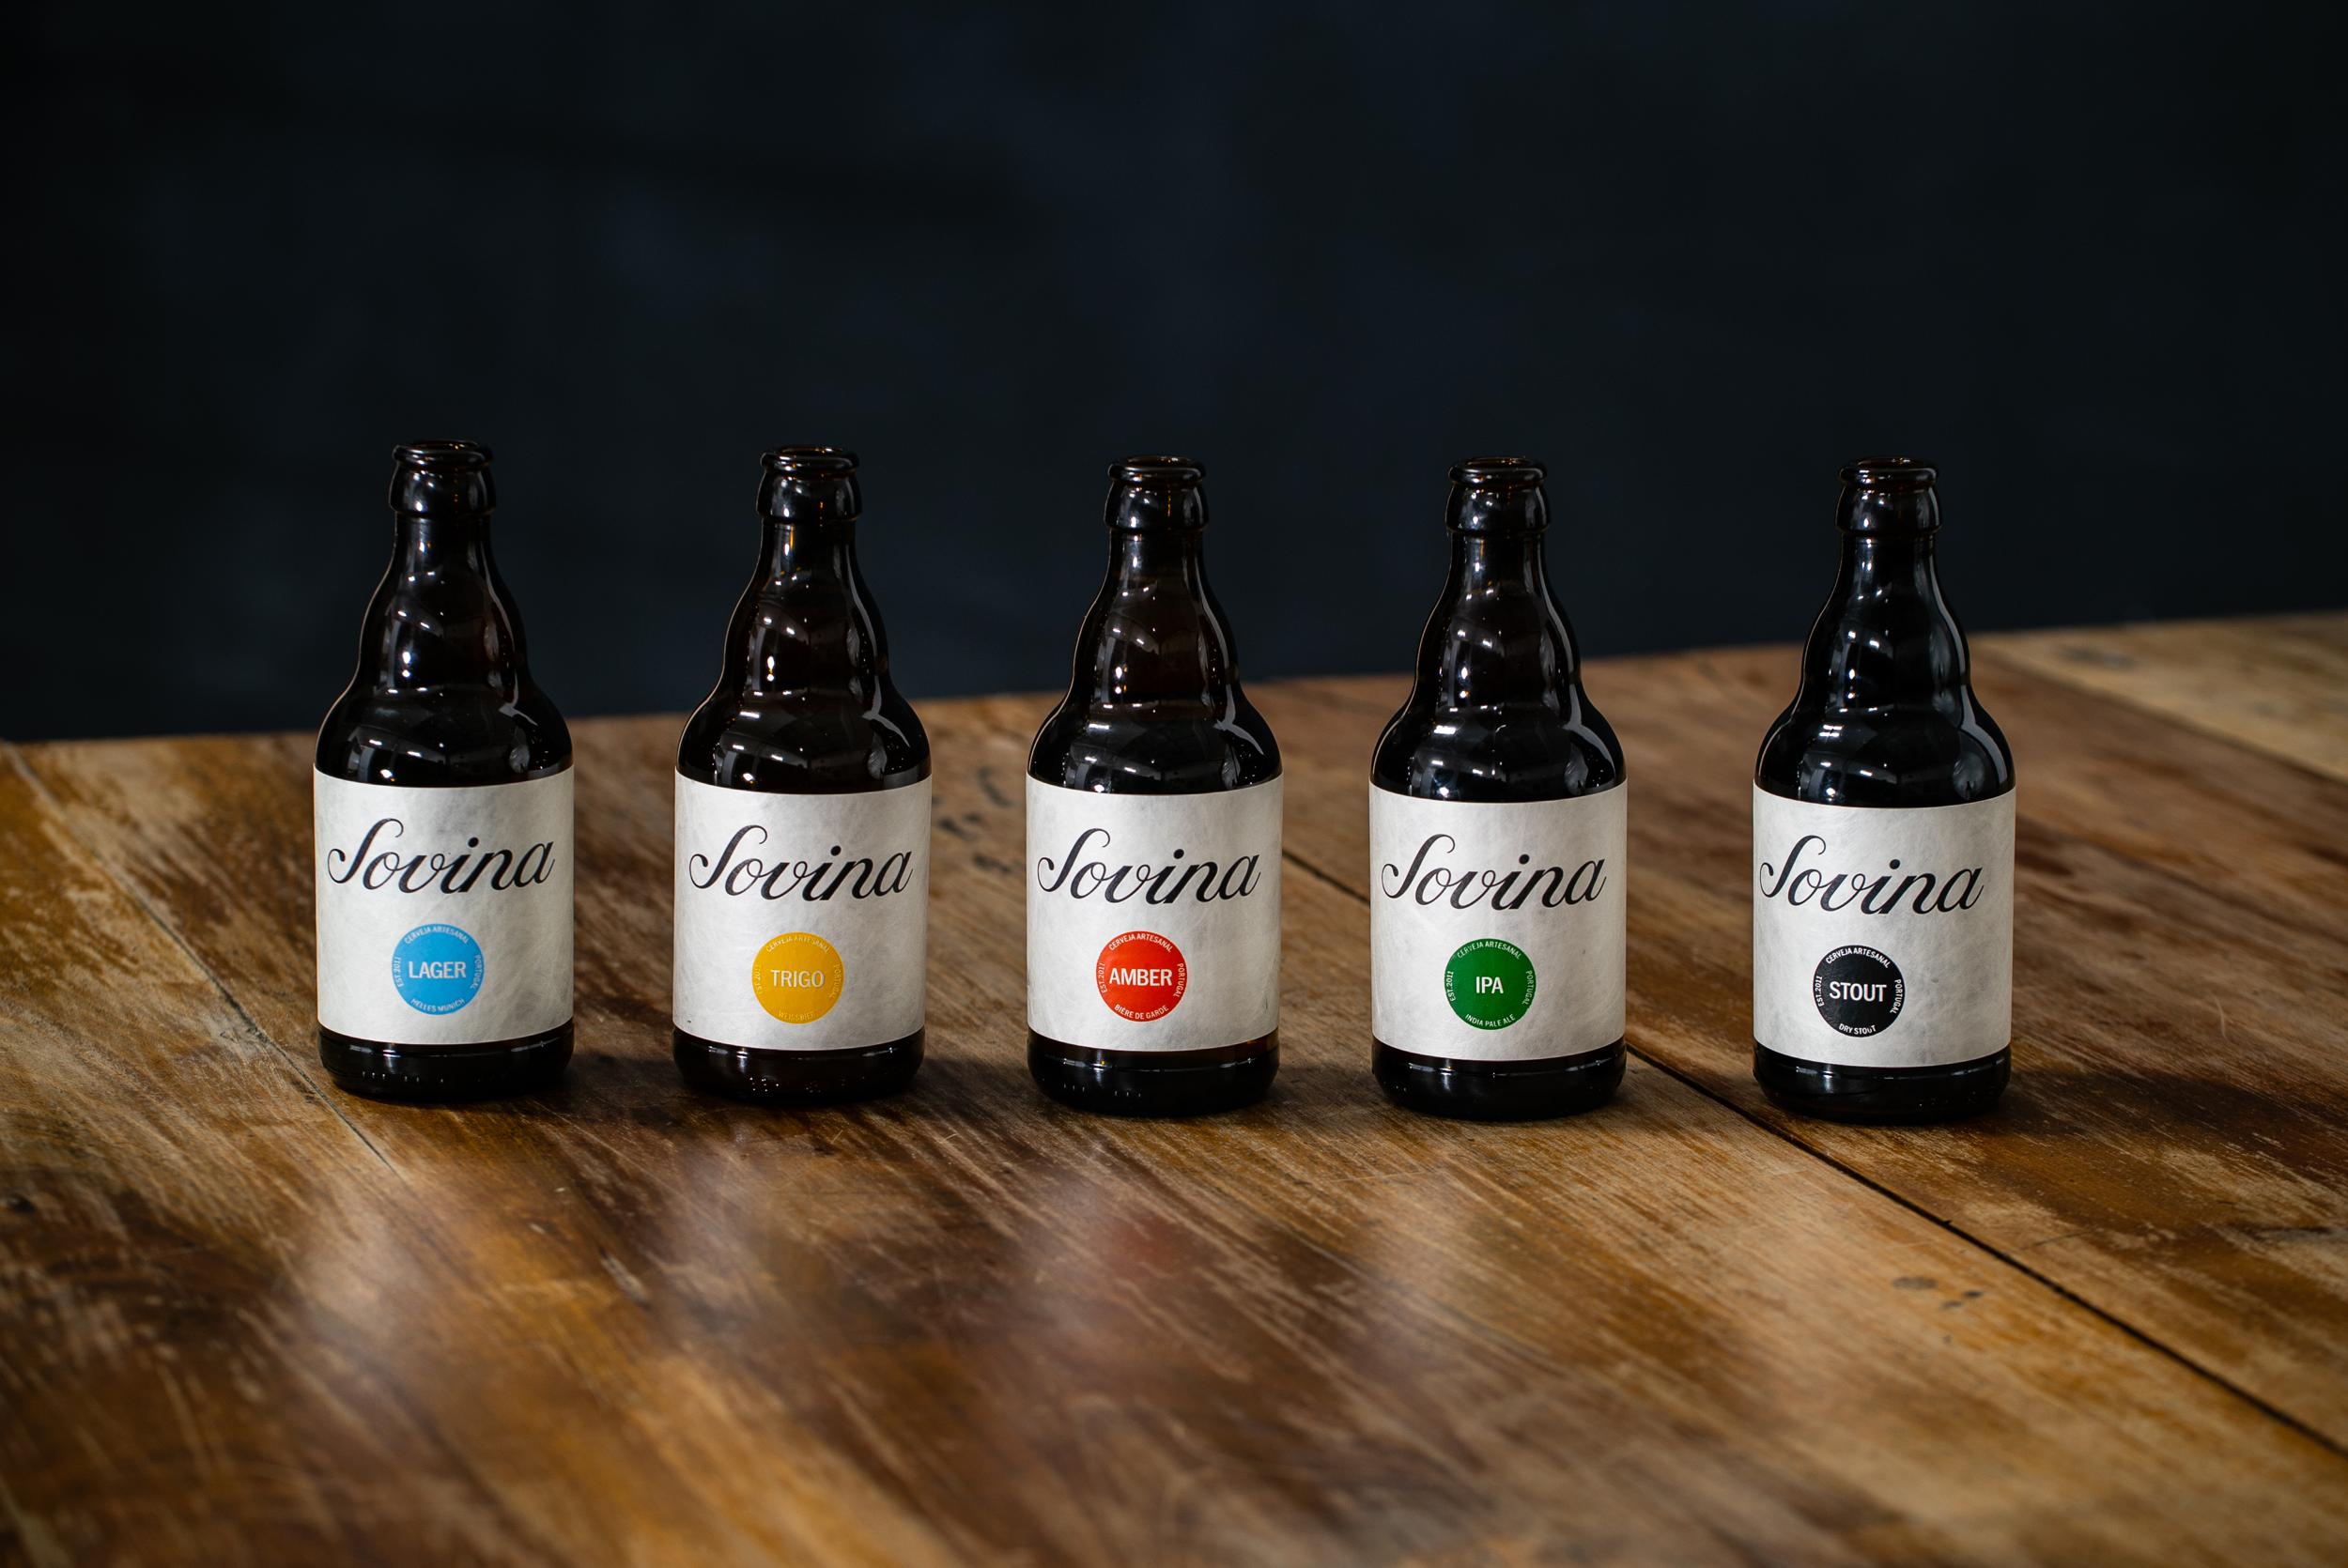 Cervejas Sovina passam a ser distribuídas pela Beerfreaks no canal Horeca -  Grande Consumo